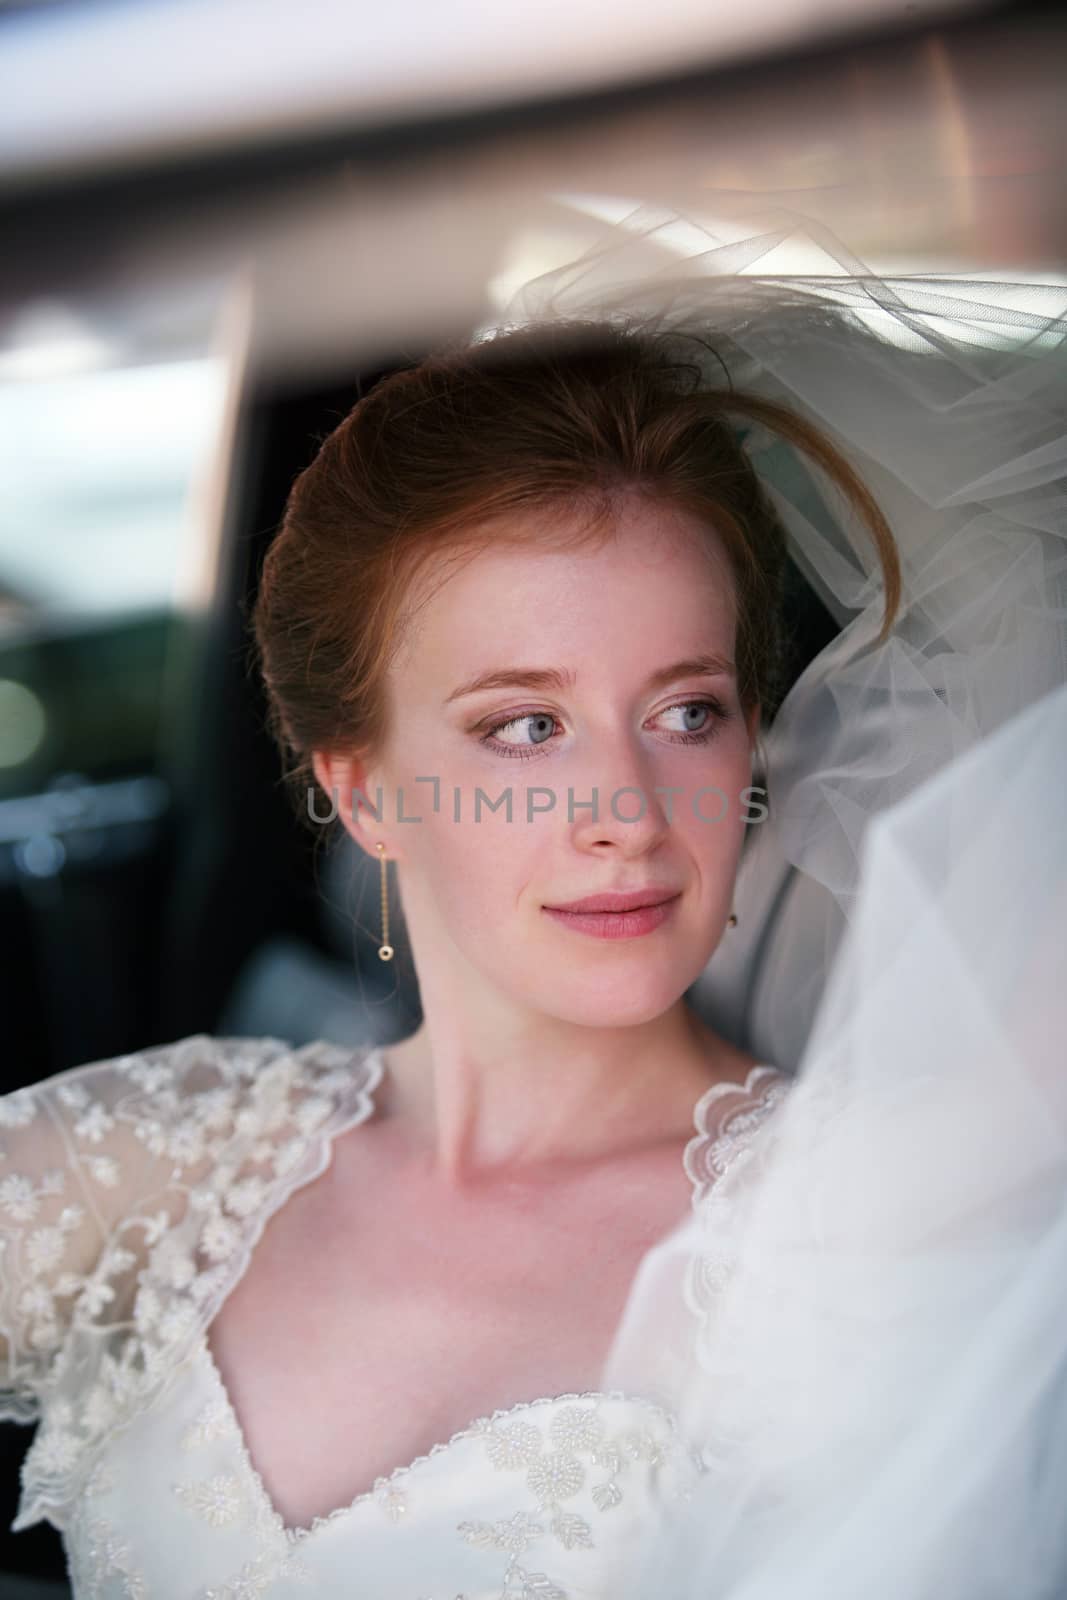 Portrait of a beautiful bride in a car